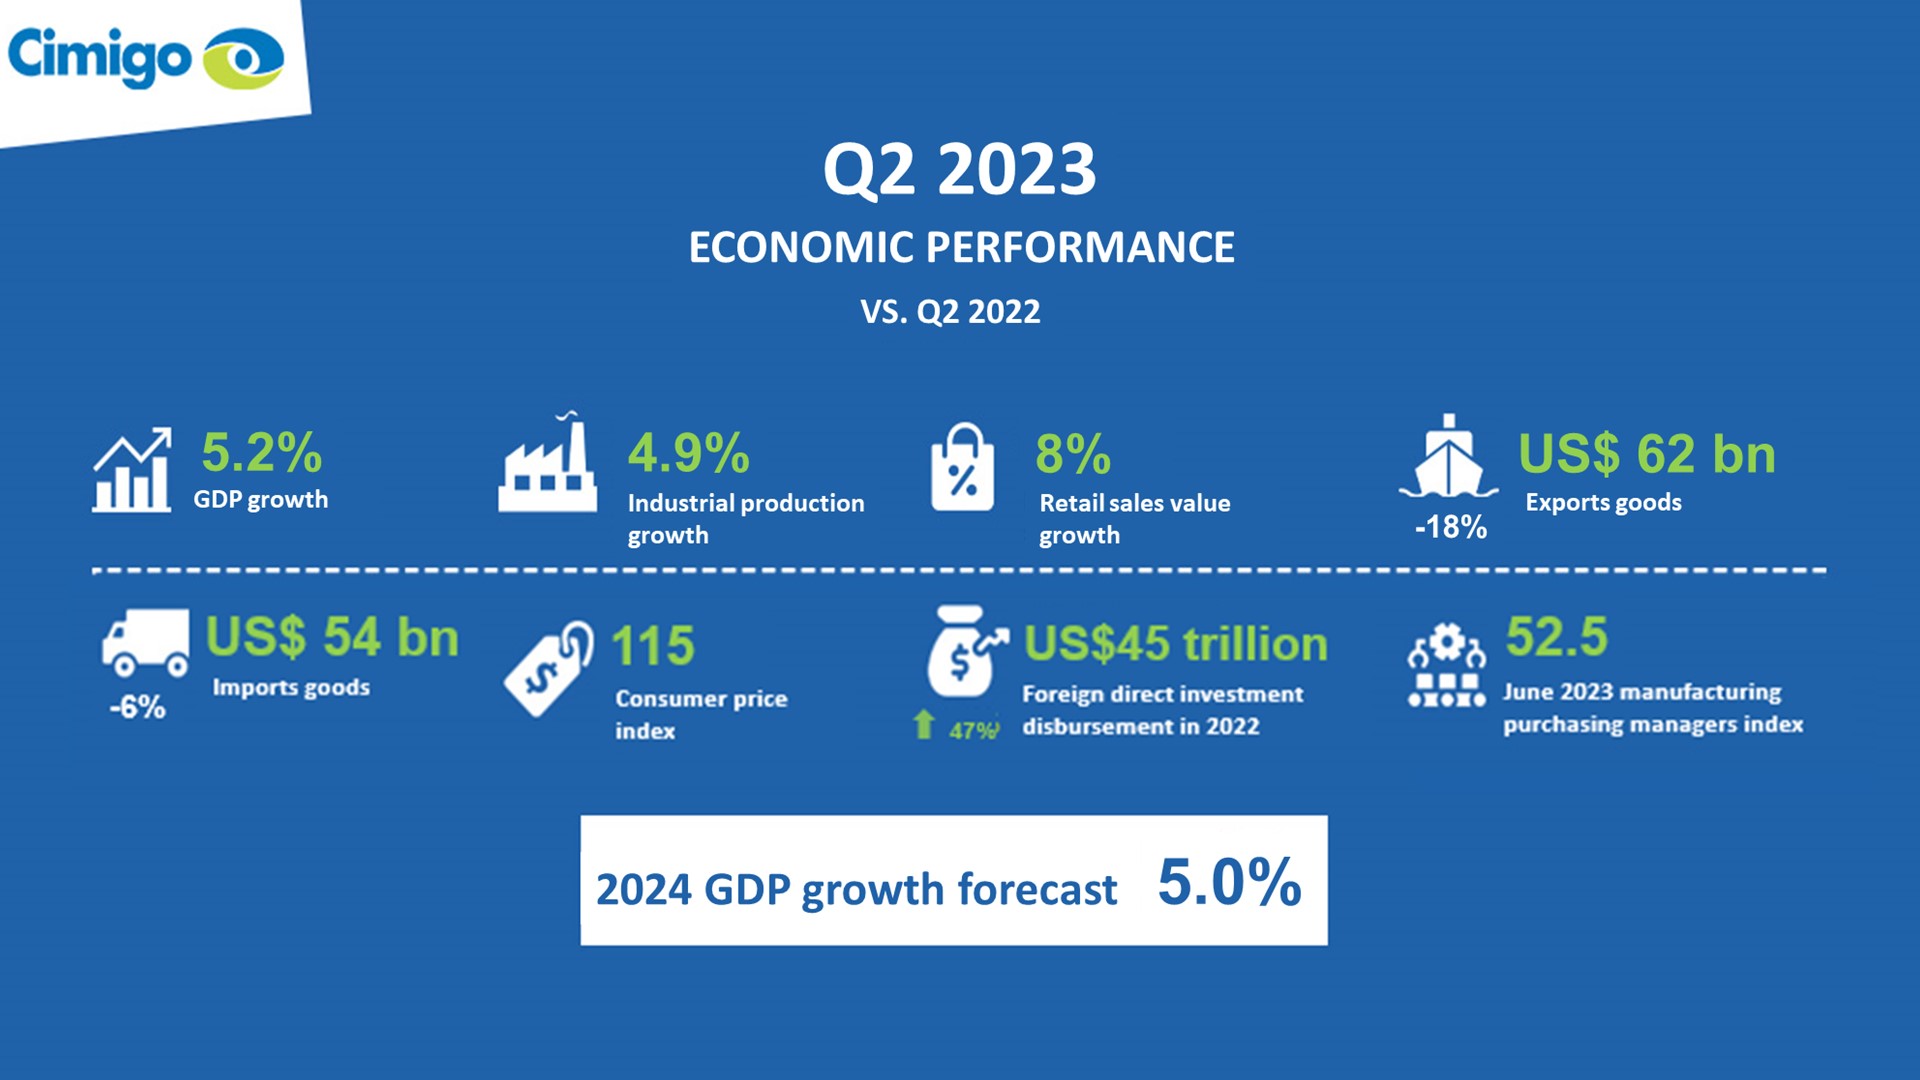 Indonesian economic performance